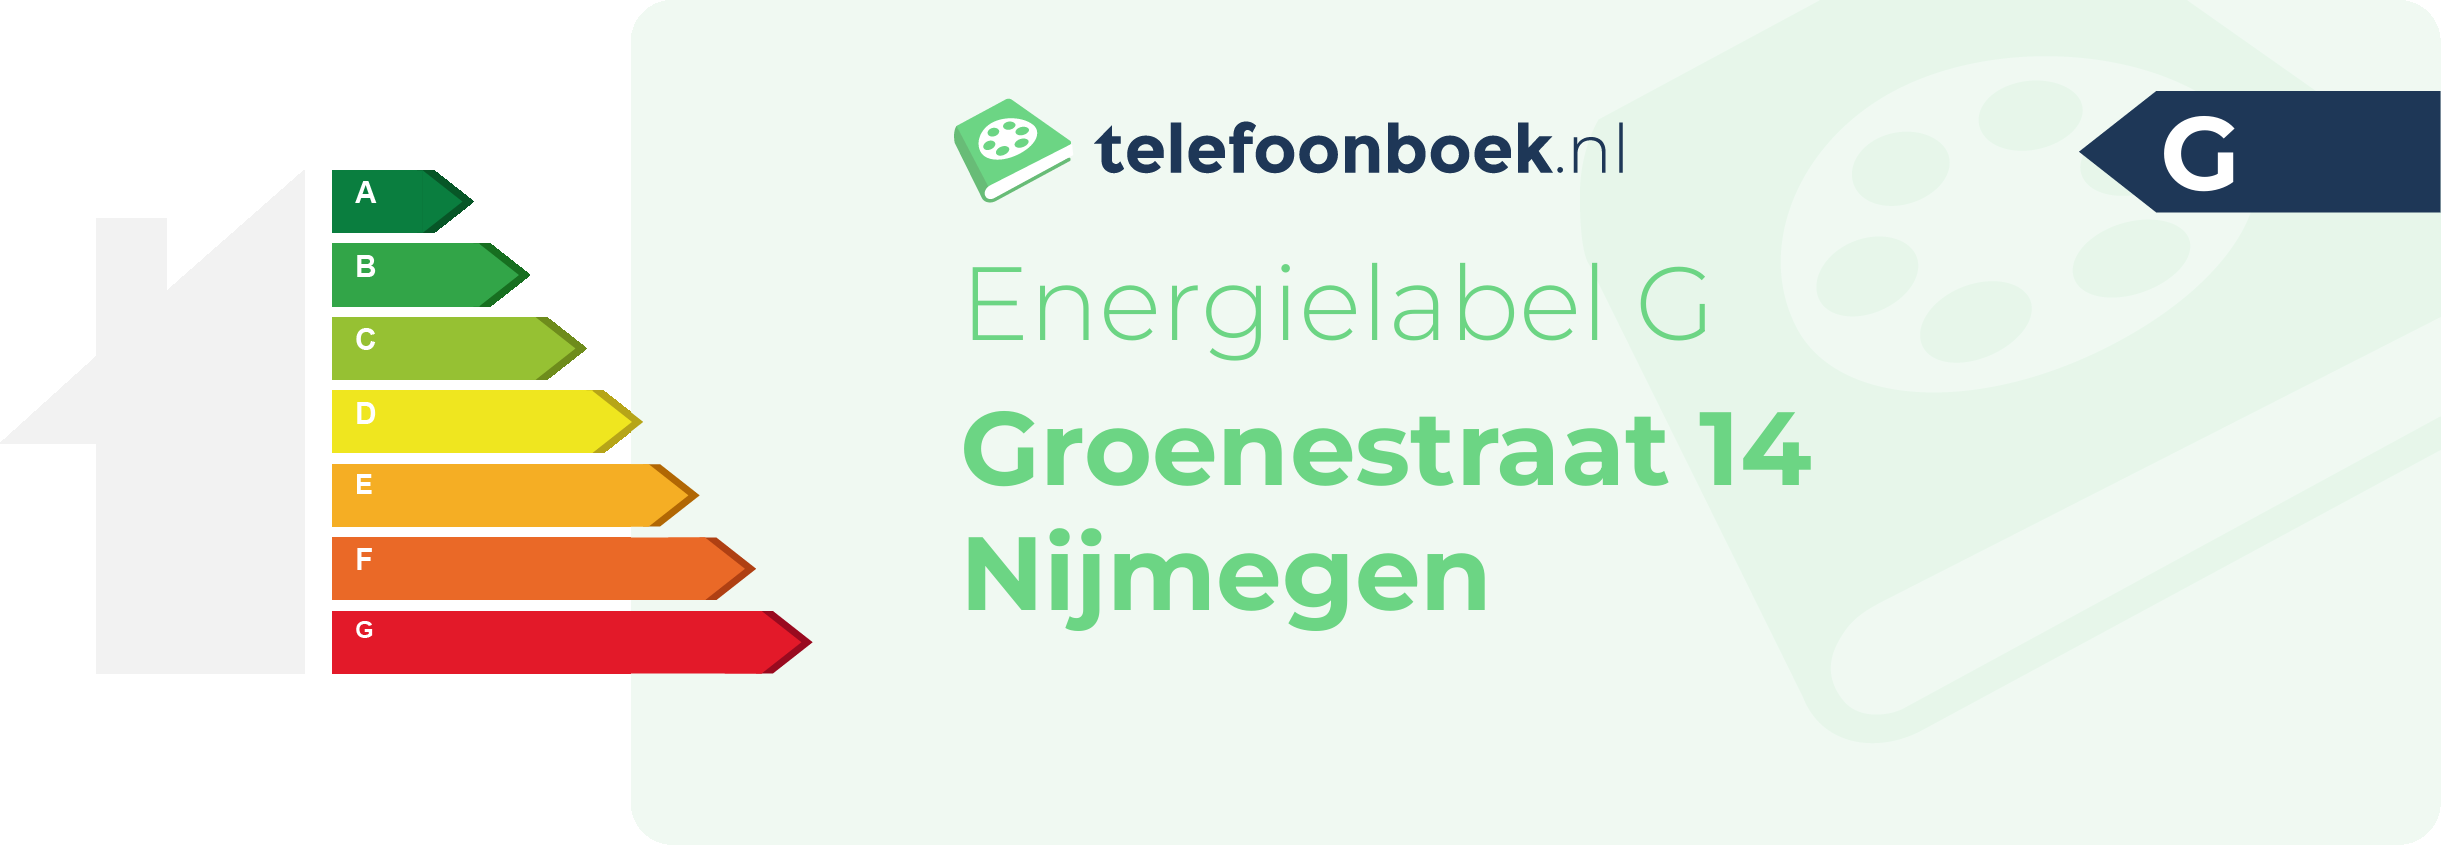 Energielabel Groenestraat 14 Nijmegen